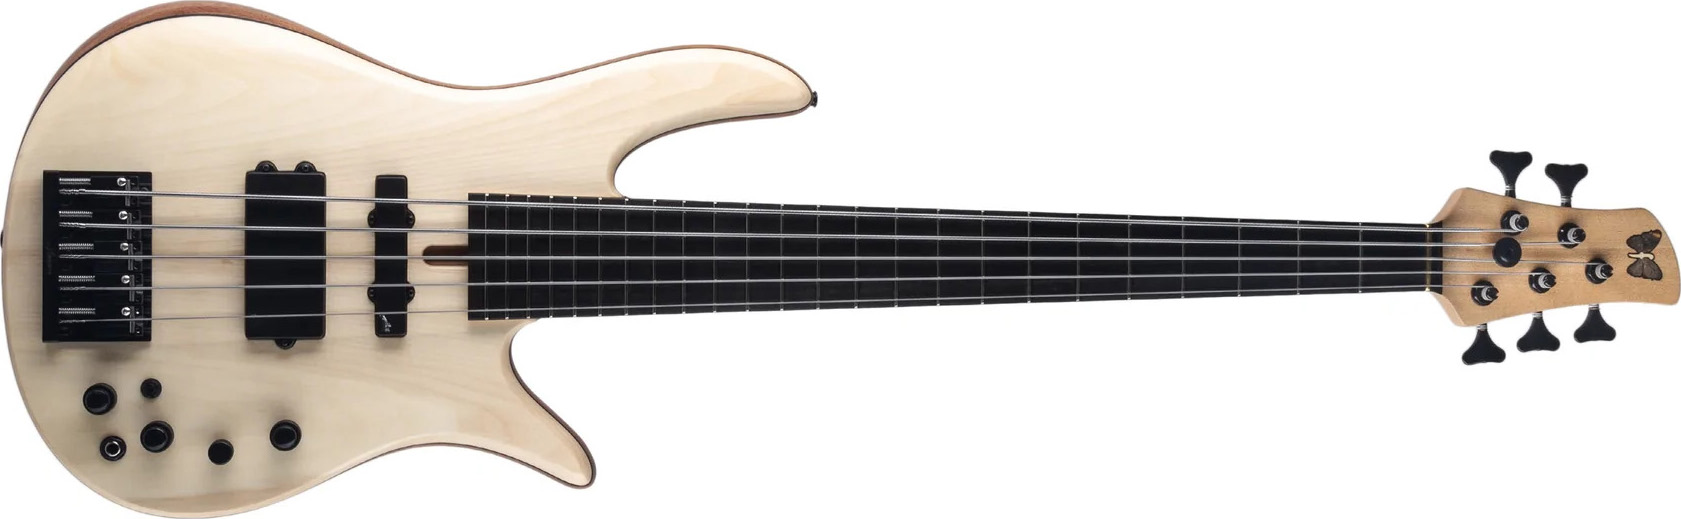 Fodera Guitars Monarch 5 Standard Bass